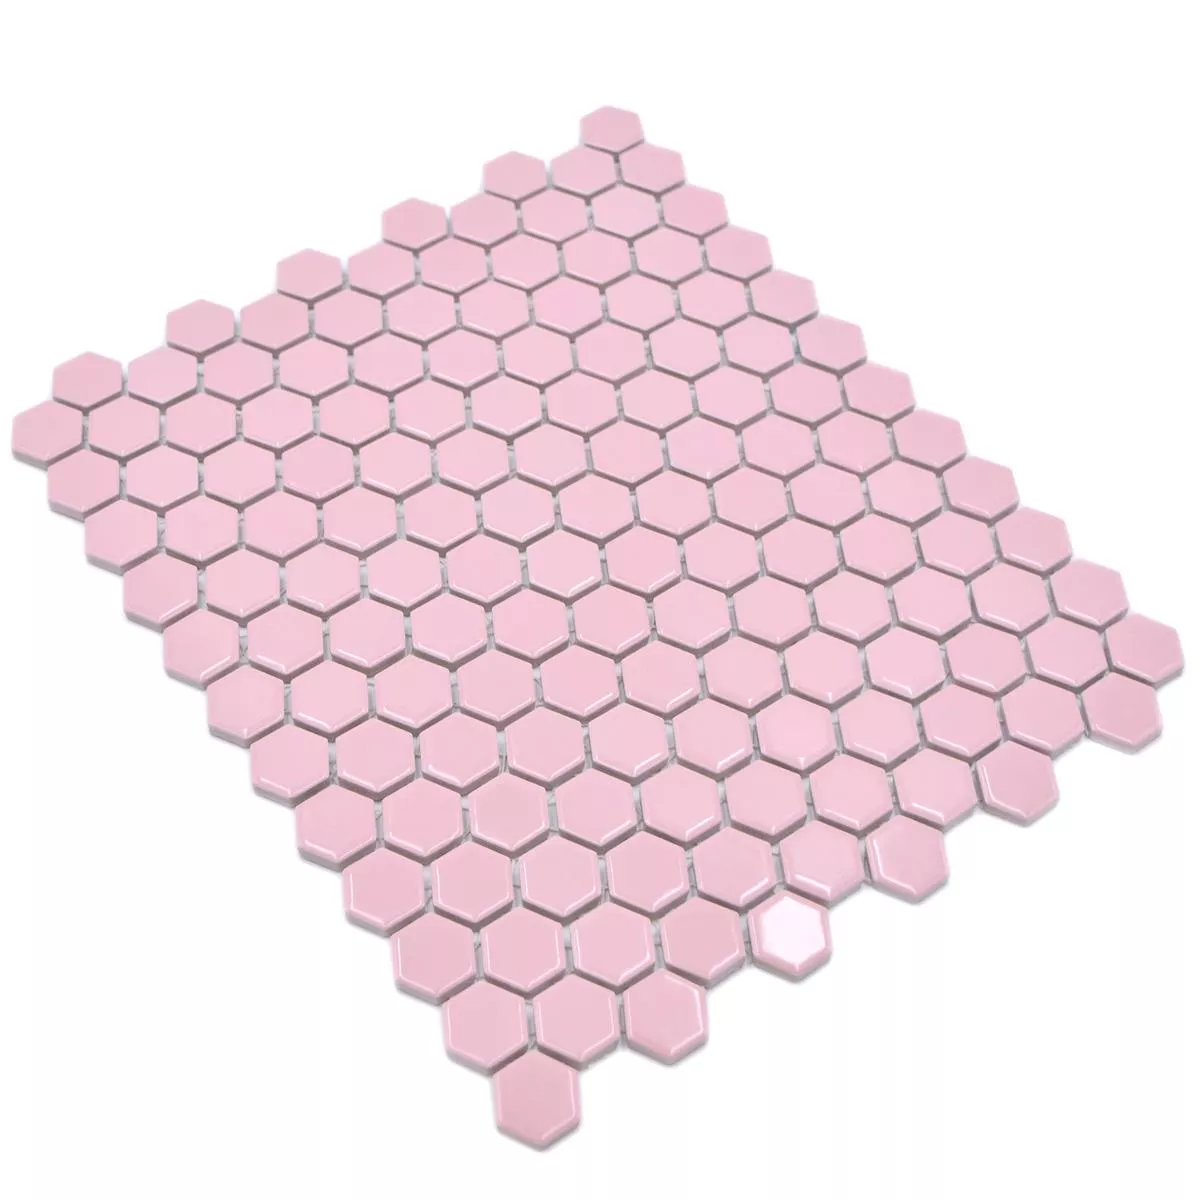 Mosaico Cerámico Salomon Hexagonales Rosa H23